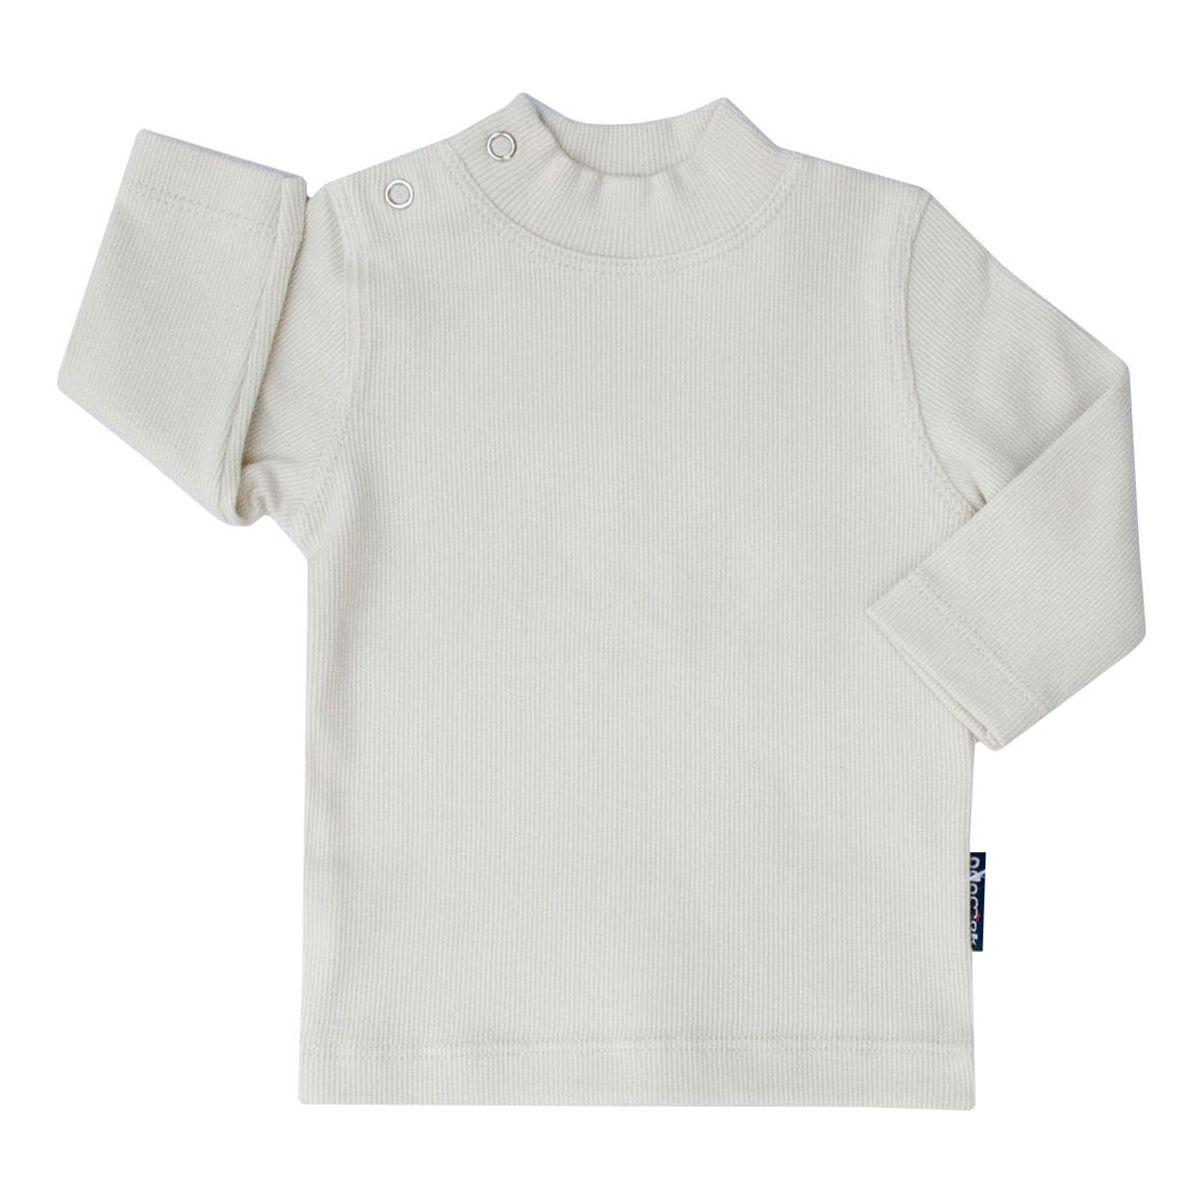 تی شرت آستین بلند بچگانه آدمک کد 145401 رنگ سفید -  - 2